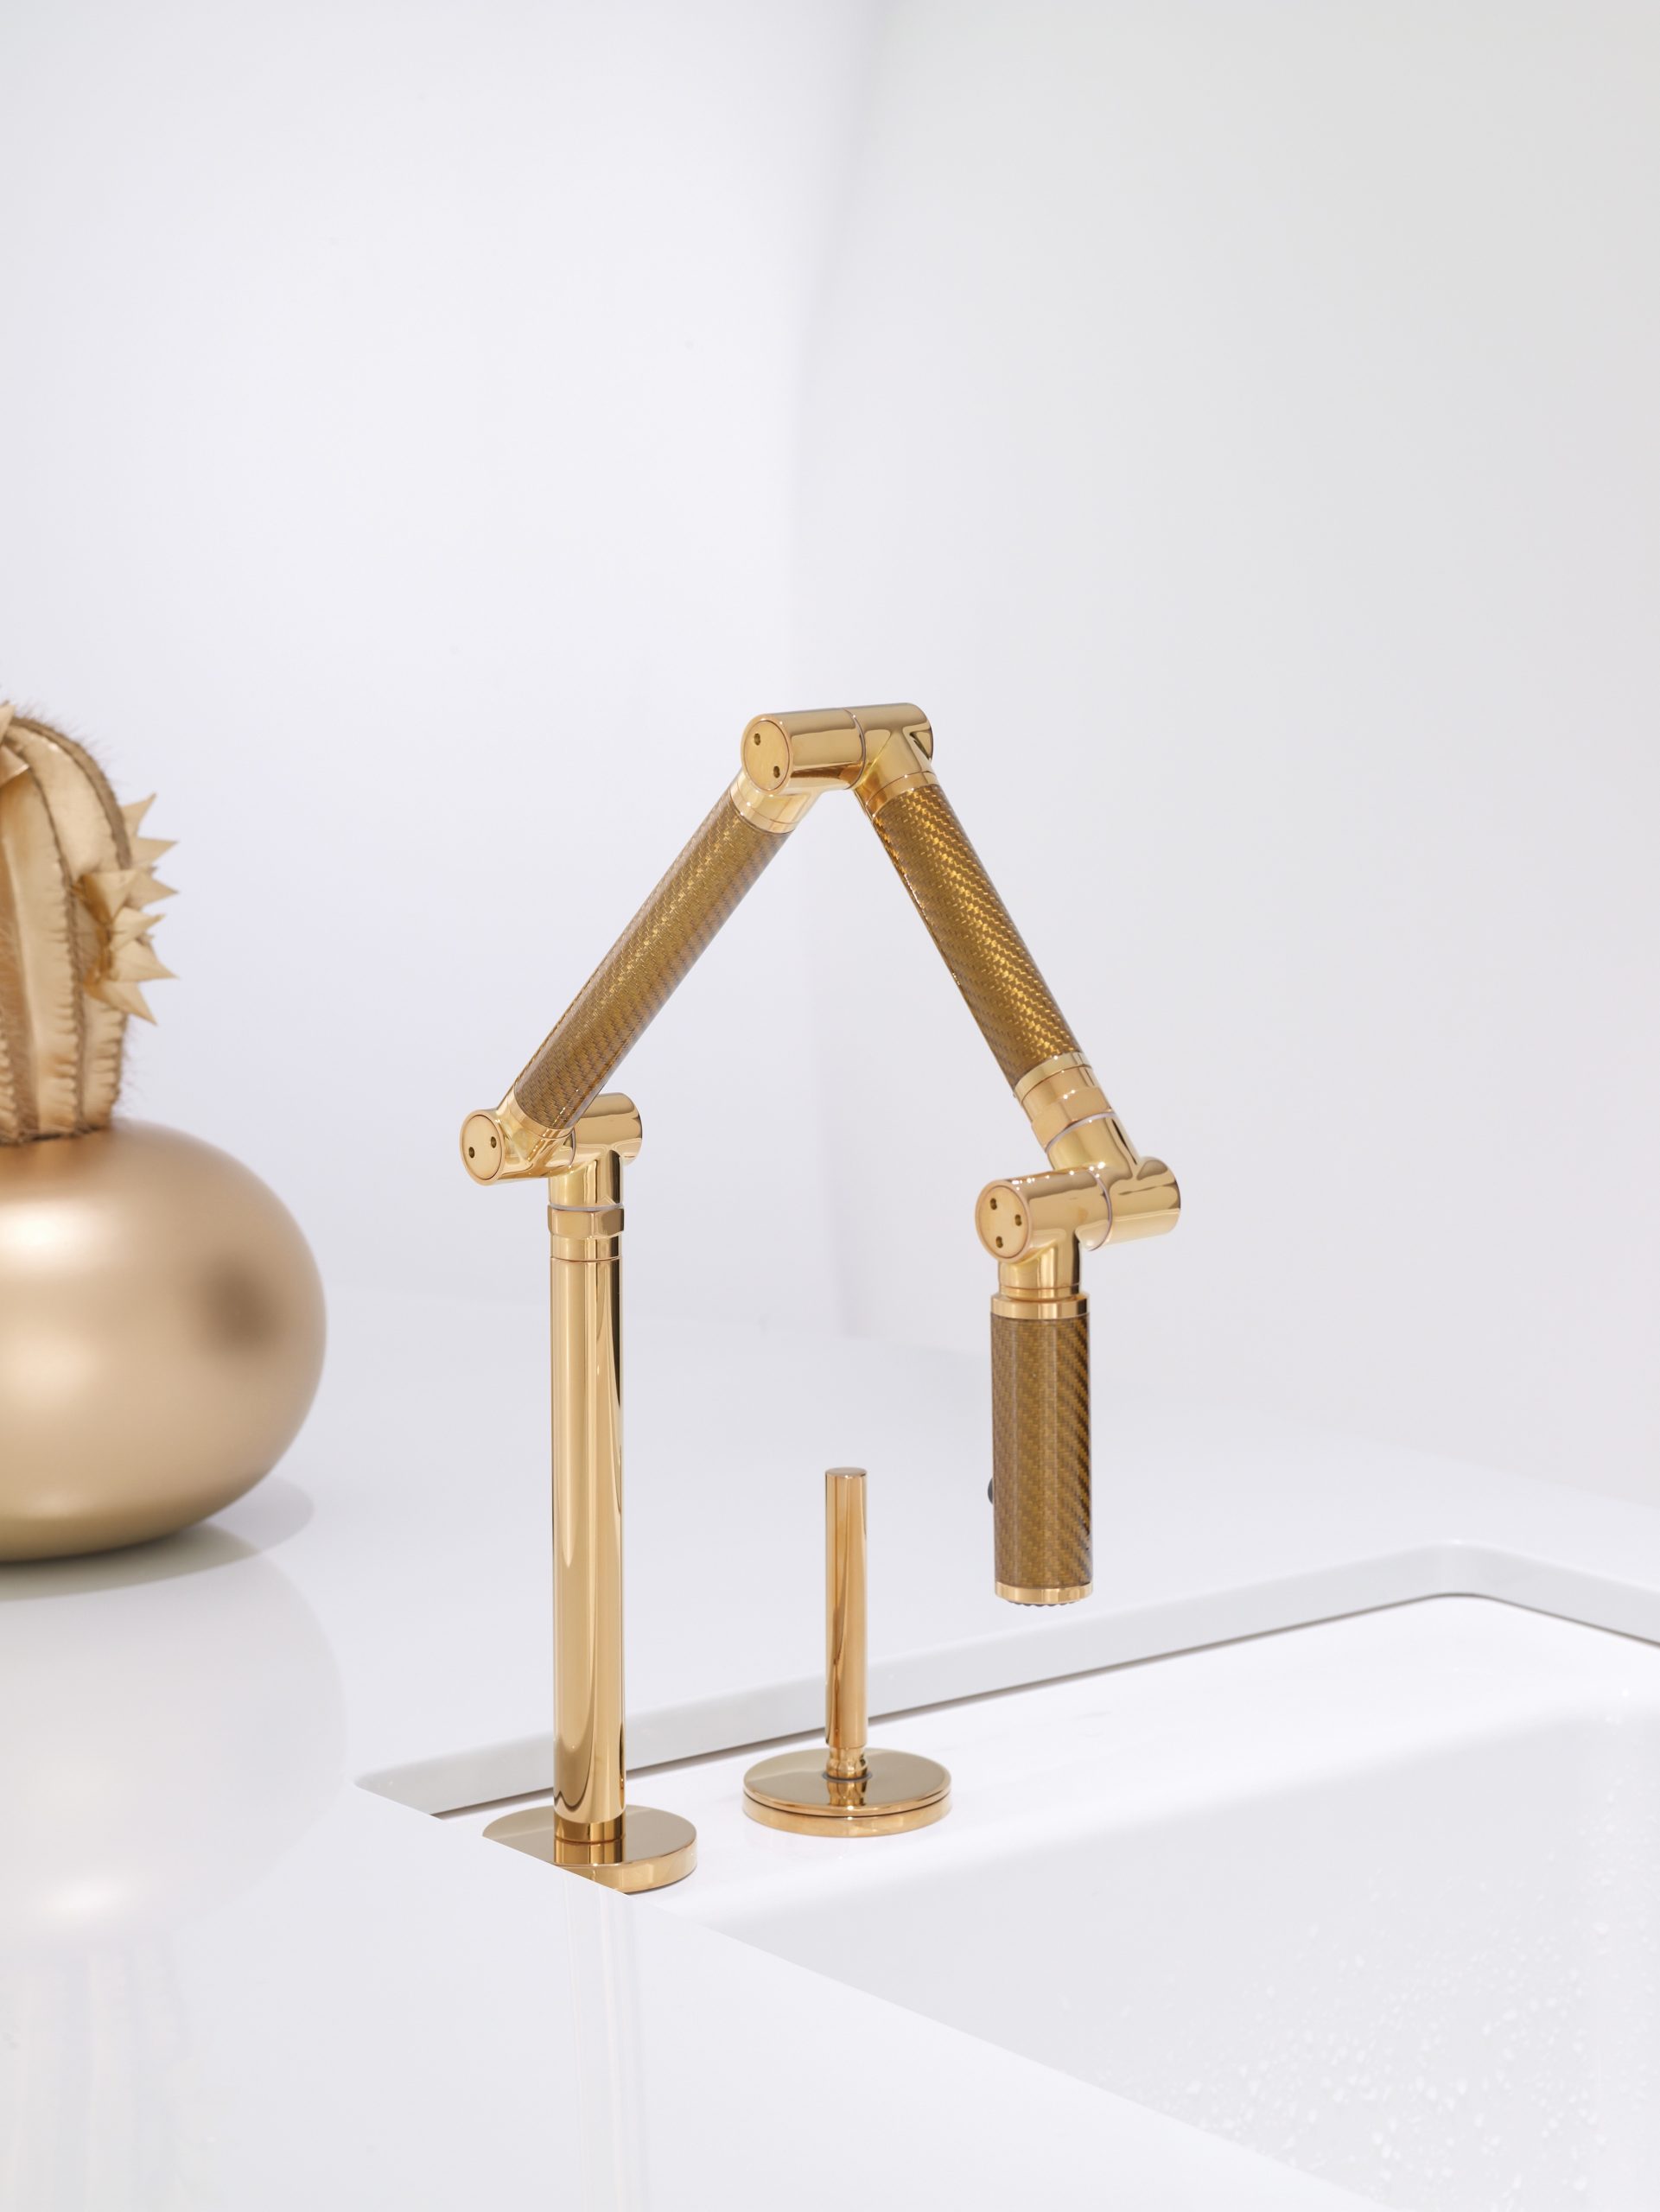 Kohler's Karbon Articulating Faucet in Brass